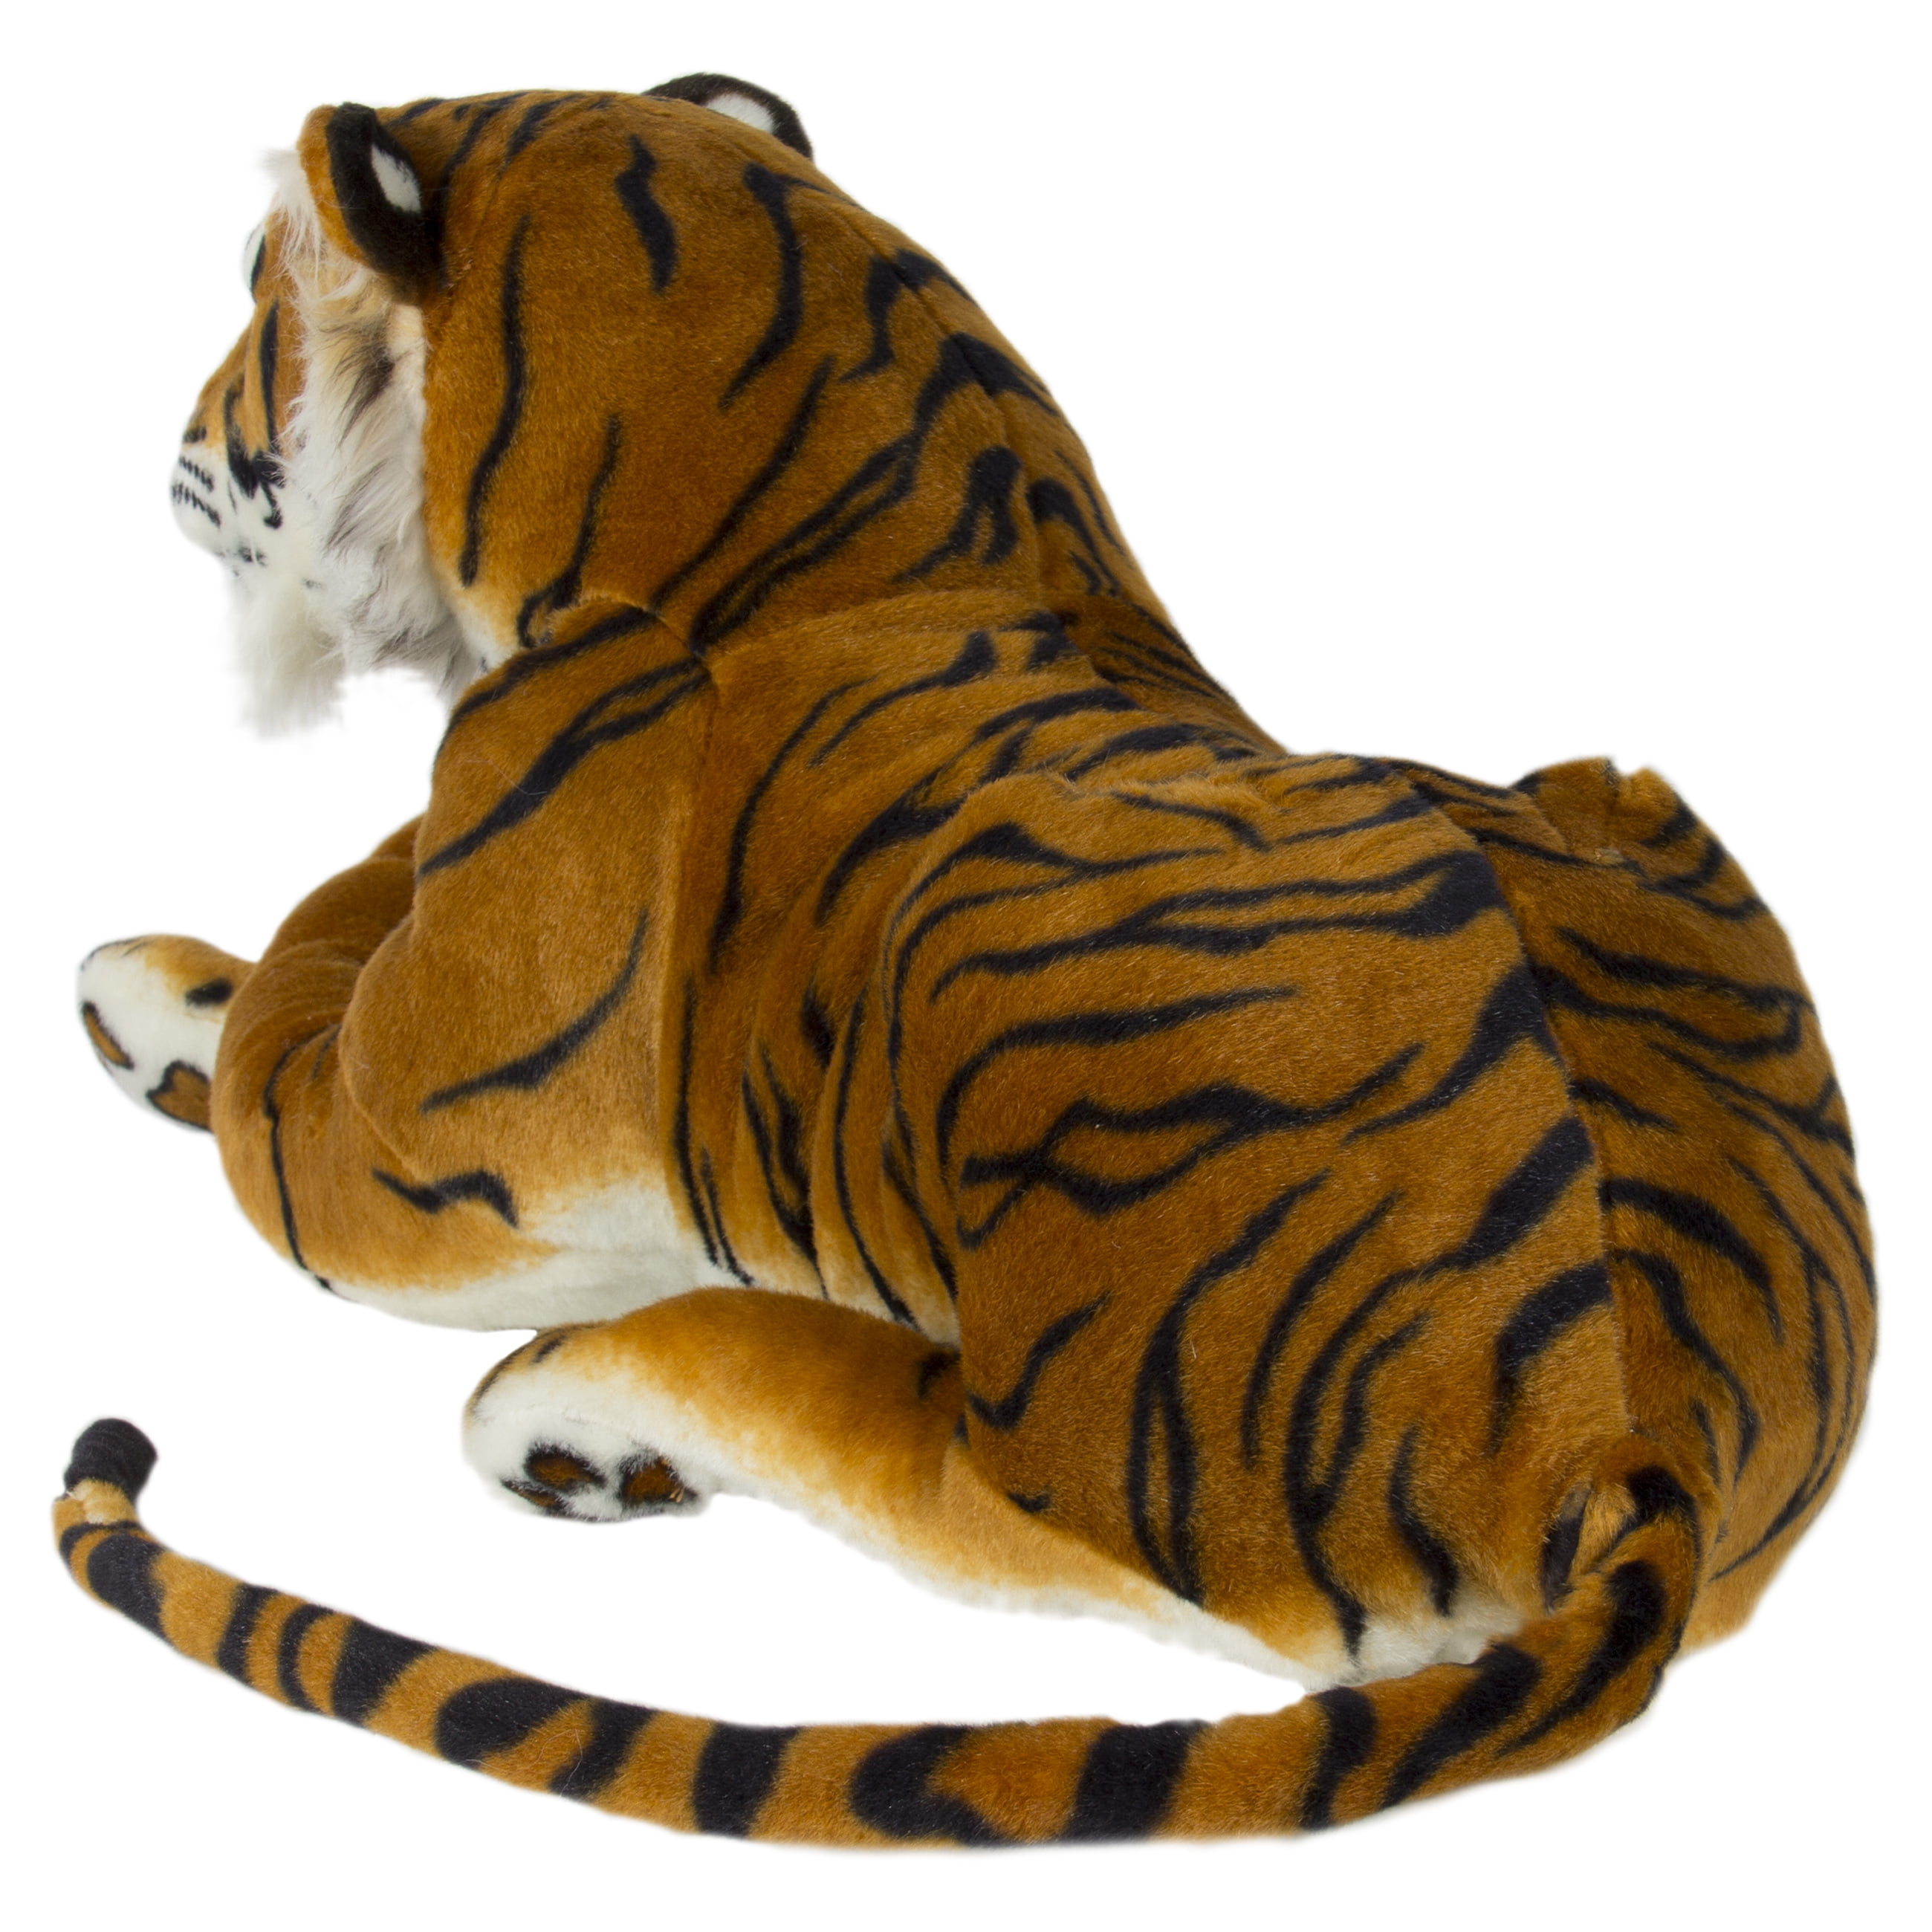 melissa and doug giant tiger